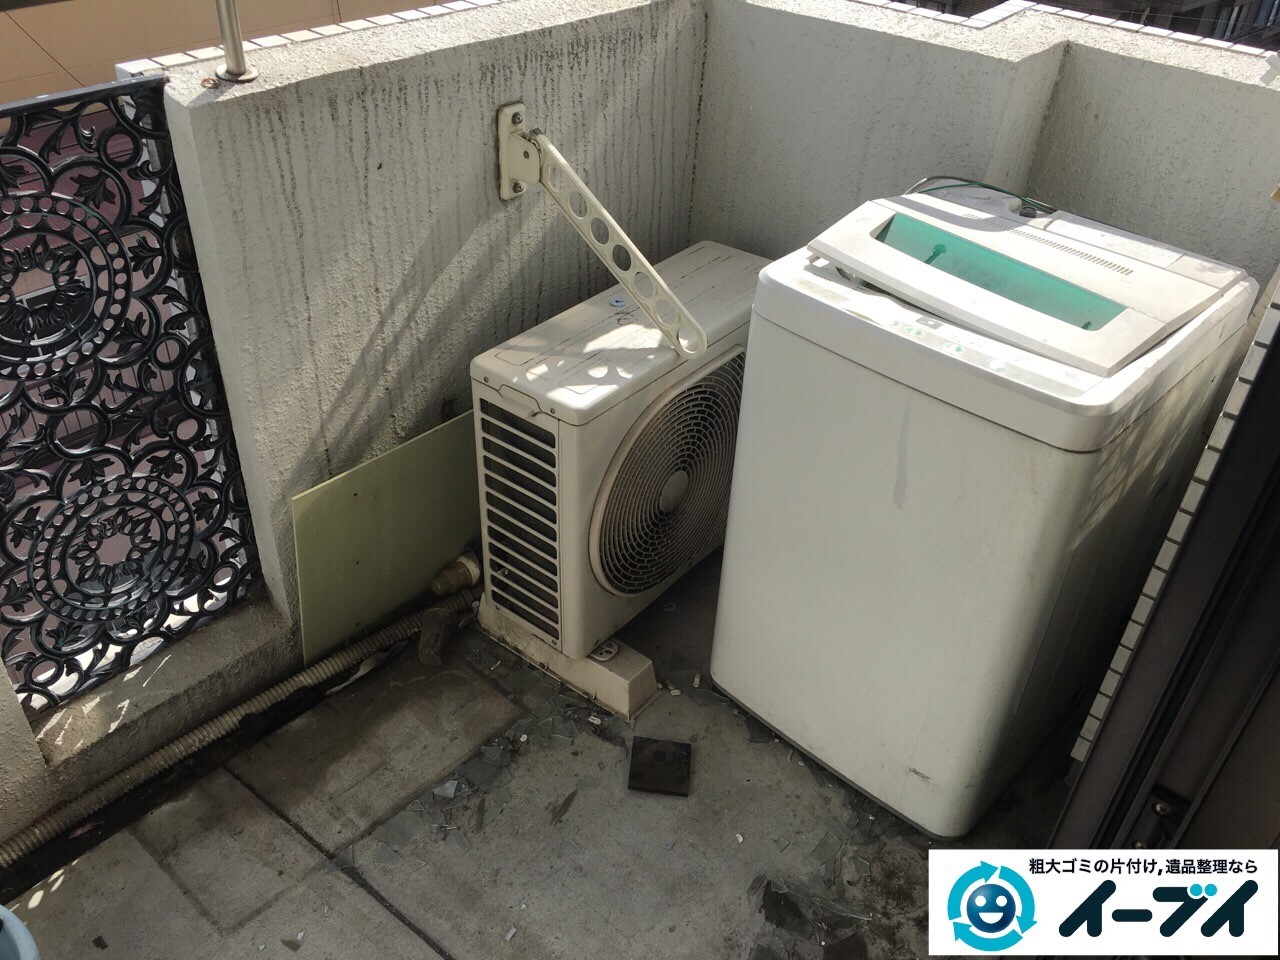 4月1日大阪府堺市西区でベランダの洗濯機や廃品の不用品回収をしました。写真2